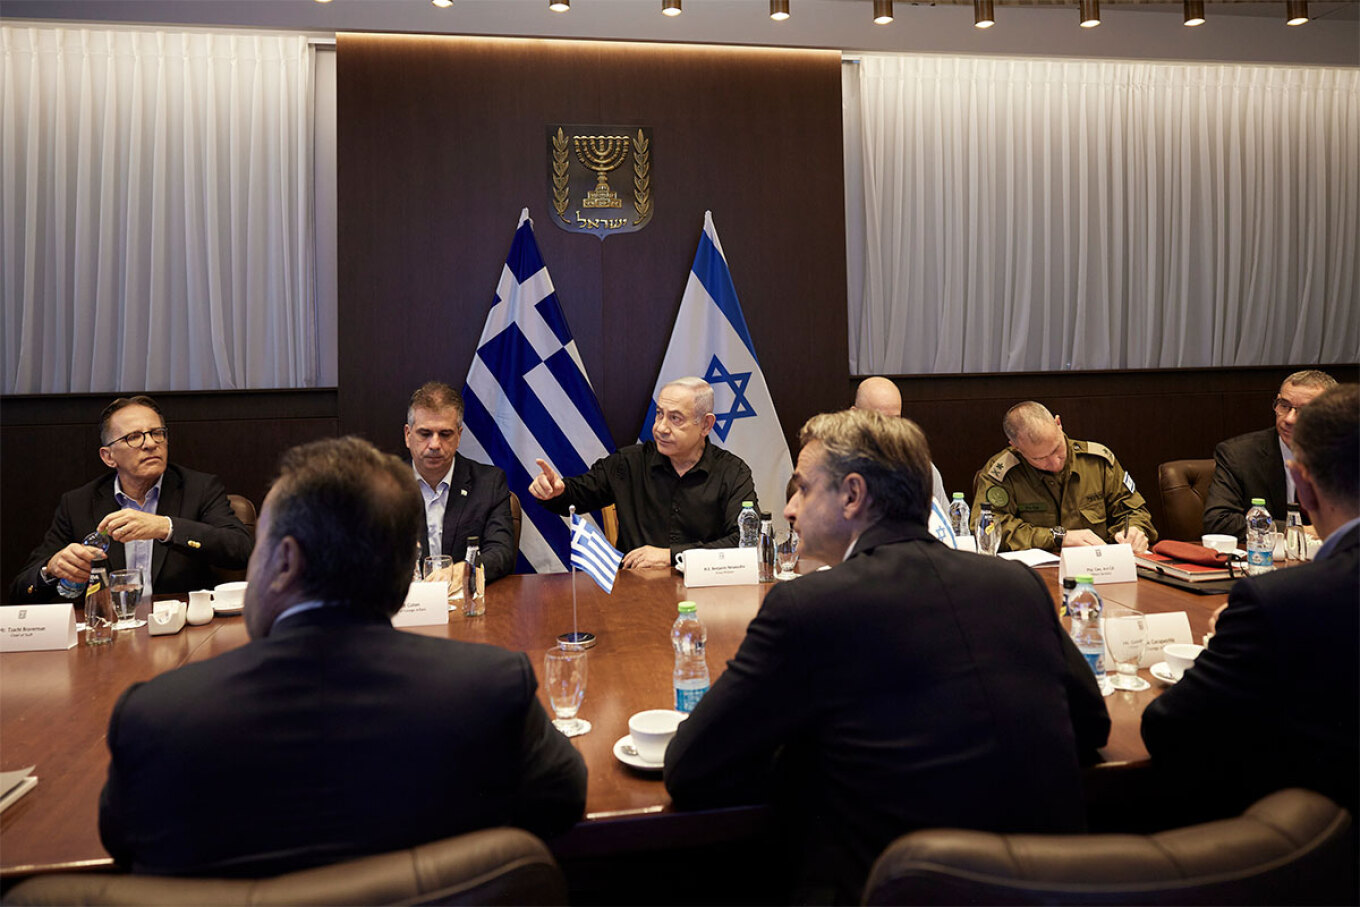 Με τον Πρωθυπουργό του Ισραήλ, Μπενιαμίν Νετανιάχου, συναντήθηκε ο Έλληνας Πρωθυπουργός, Κυριάκος Μητσοτάκης, στην Ιερουσαλήμ. Ο Κυριάκος Μητσοτάκης έφτασε νωρίς το πρωί στο Ισραήλ, επιβεβαιώνοντας τις πληροφορίες που υπήρχαν από το απόγευμα της Κυριακής ότι σήμερα θα πραγματοποιήσει το ταξίδι που δεν είχε πραγματοποιηθεί την προηγούμενη εβδομάδα. Στη συνάντηση συμμετείχαν από την ελληνική πλευρά, ο υπουργός Εξωτερικών Γιώργος Γεραπετρίτης καθώς και ο υπουργός Επικρατείας Σταύρος Παπασταύρου.  Ο Κυριάκος Μη